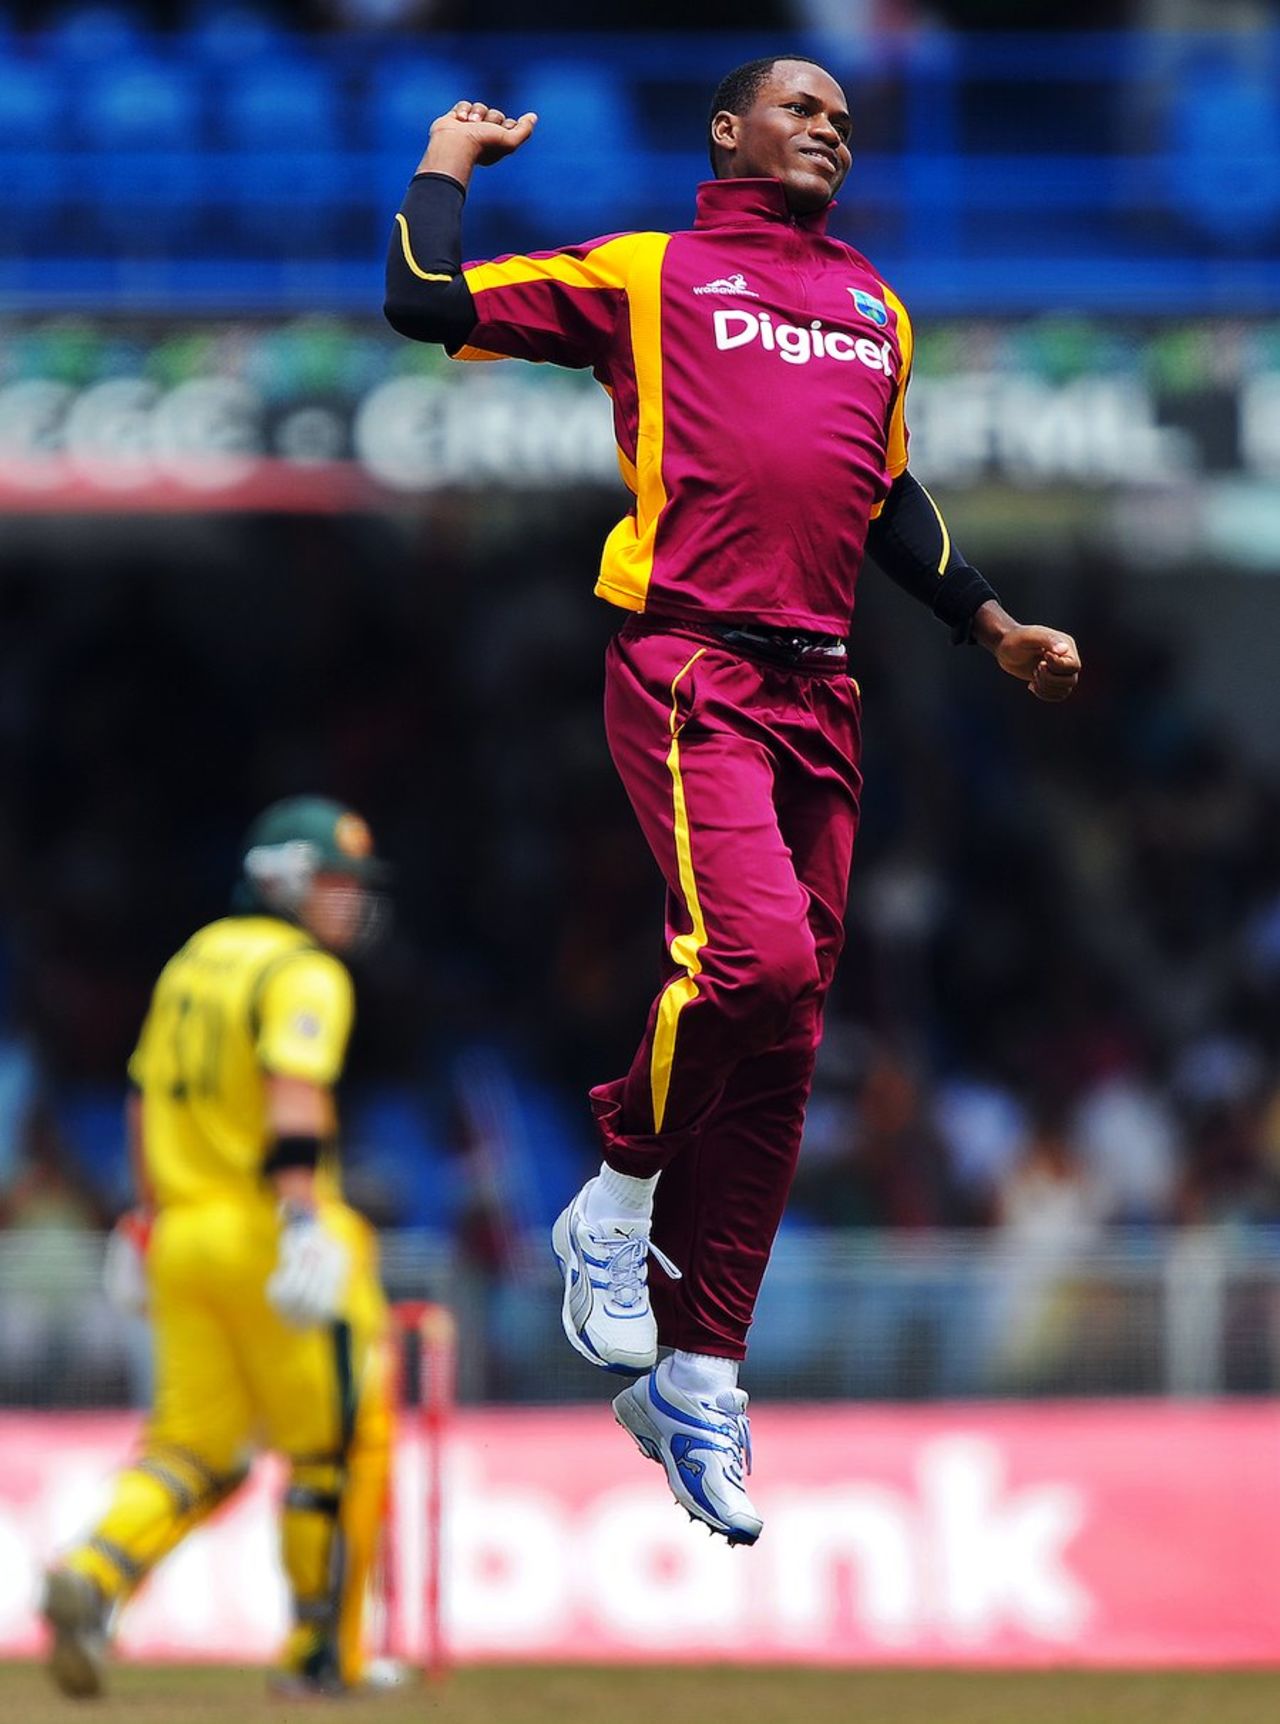 Marlon Samuels celebrates Peter Forrest's wicket, West Indies v Australia, 1st ODI, St Vincent, March 16, 2012